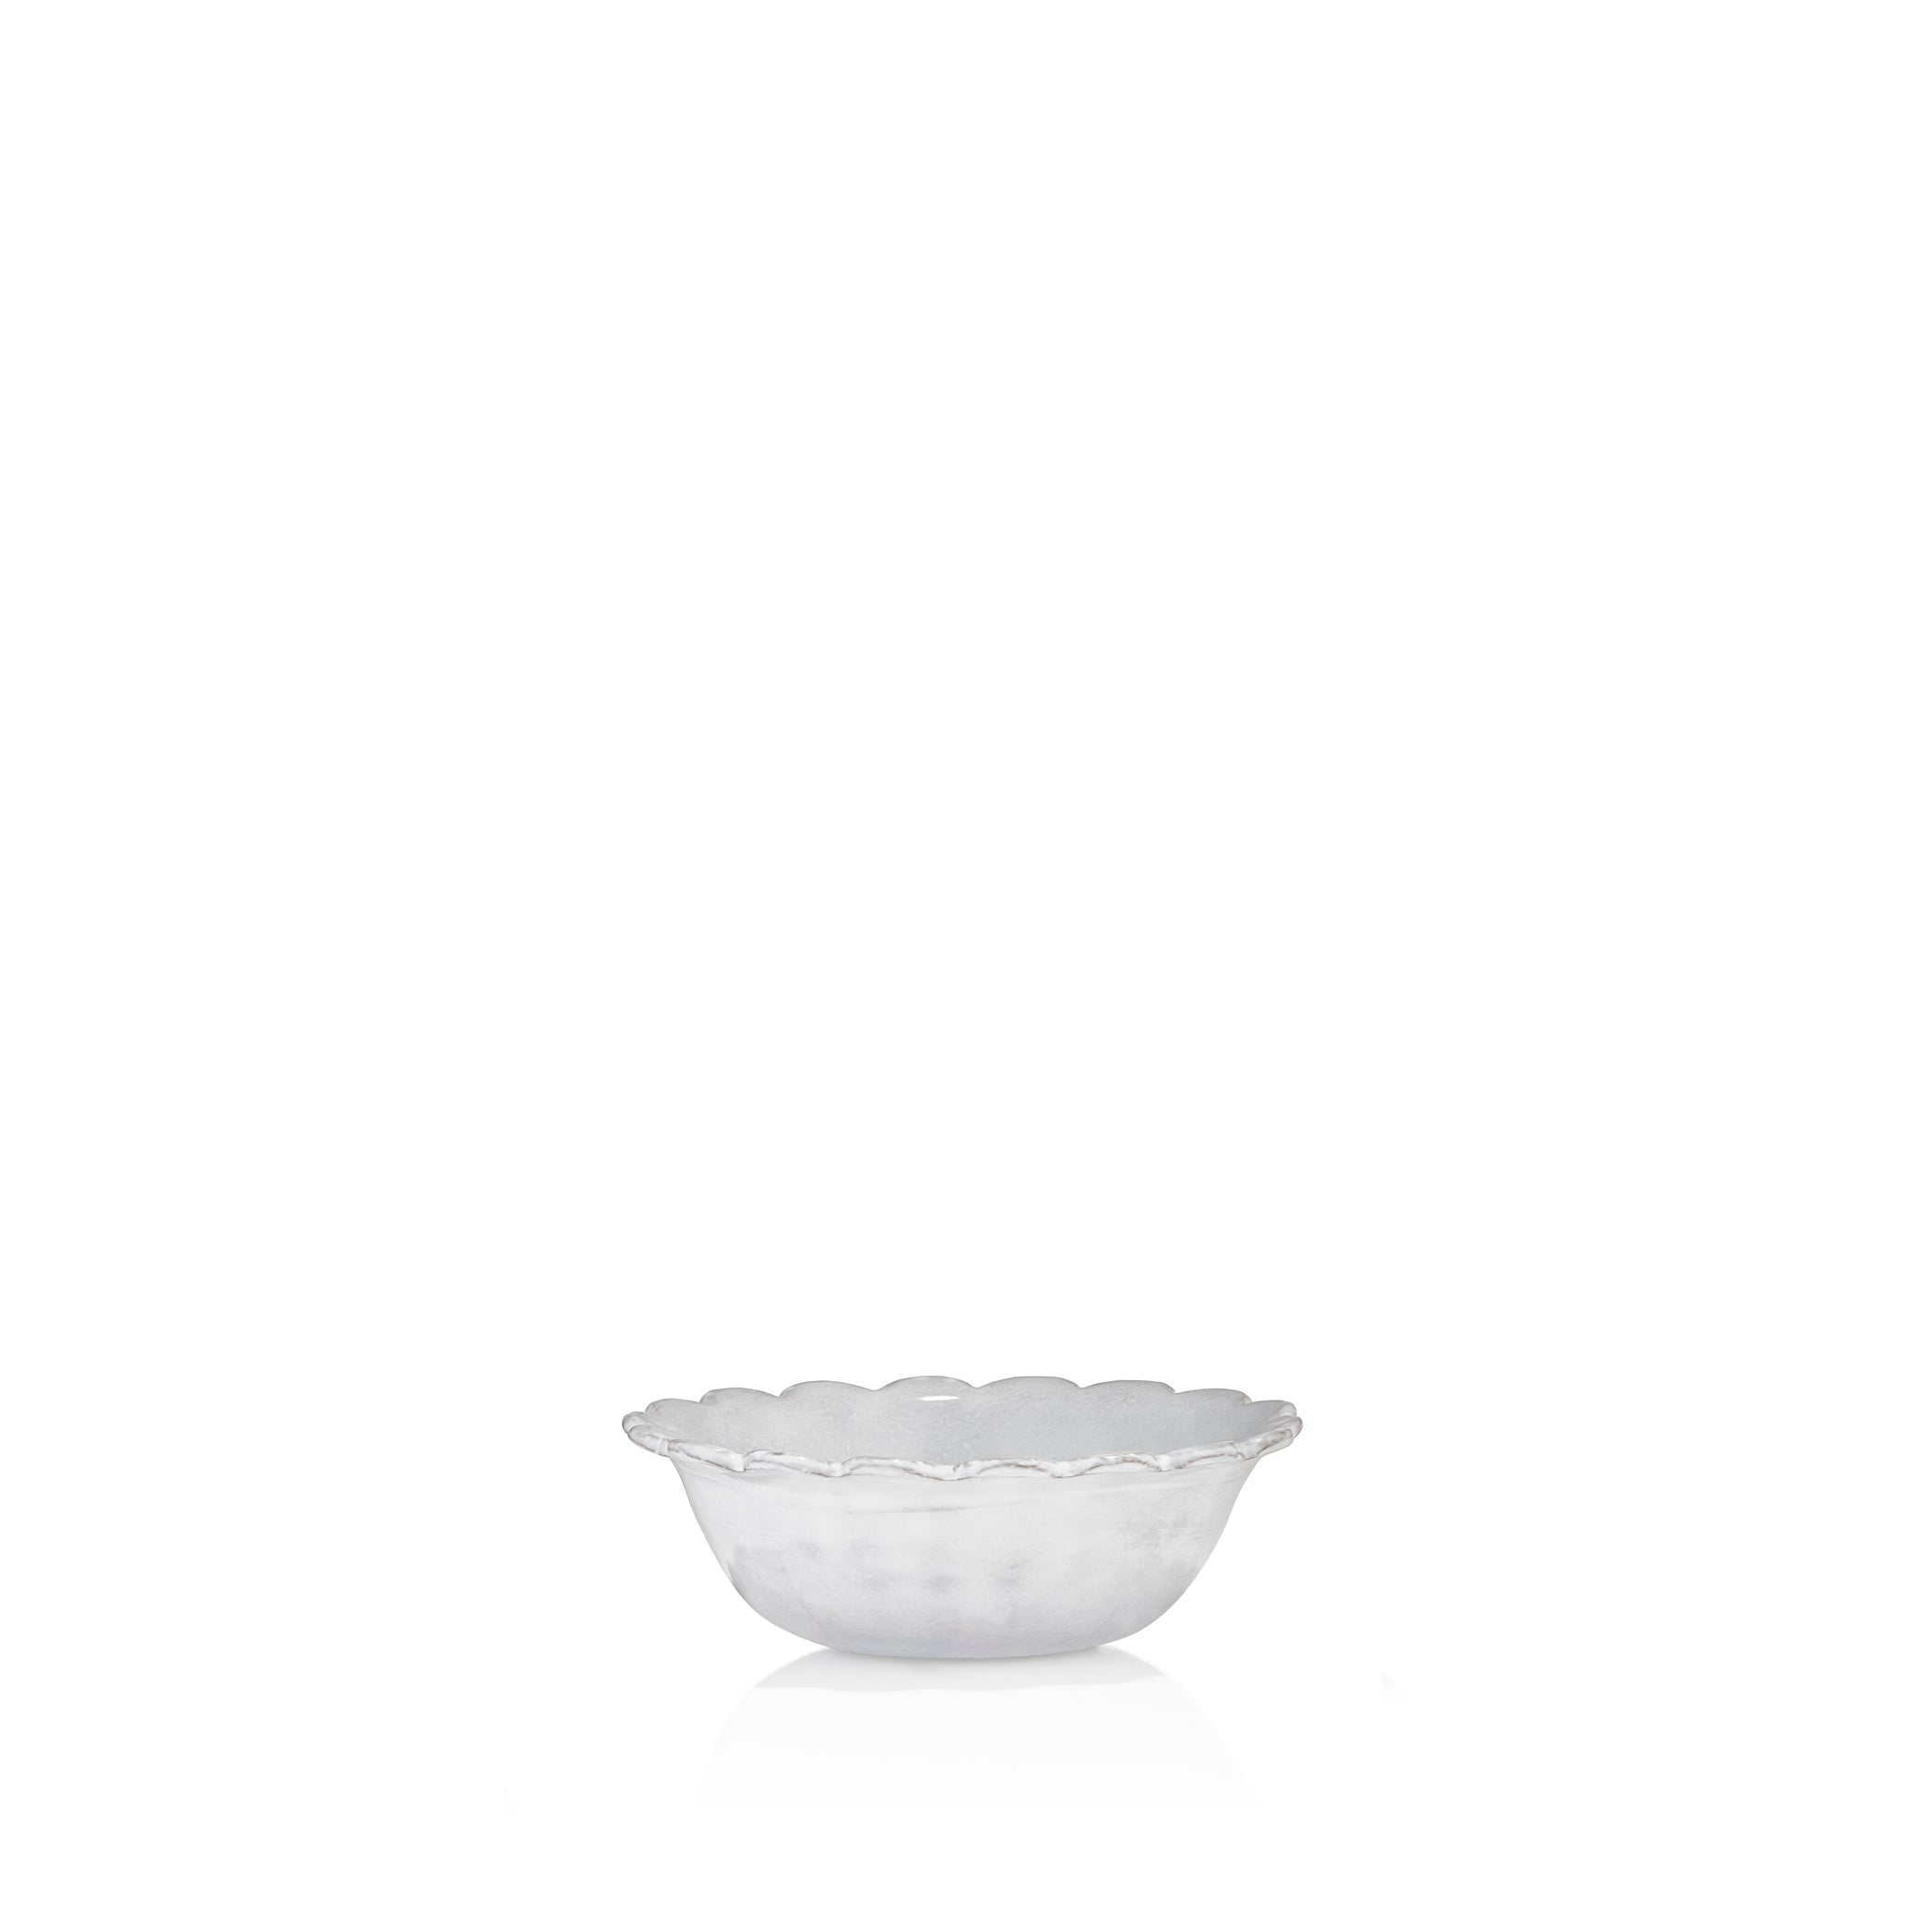 Daisy Mini Salad Bowl by Astier de Villatte, 12cm